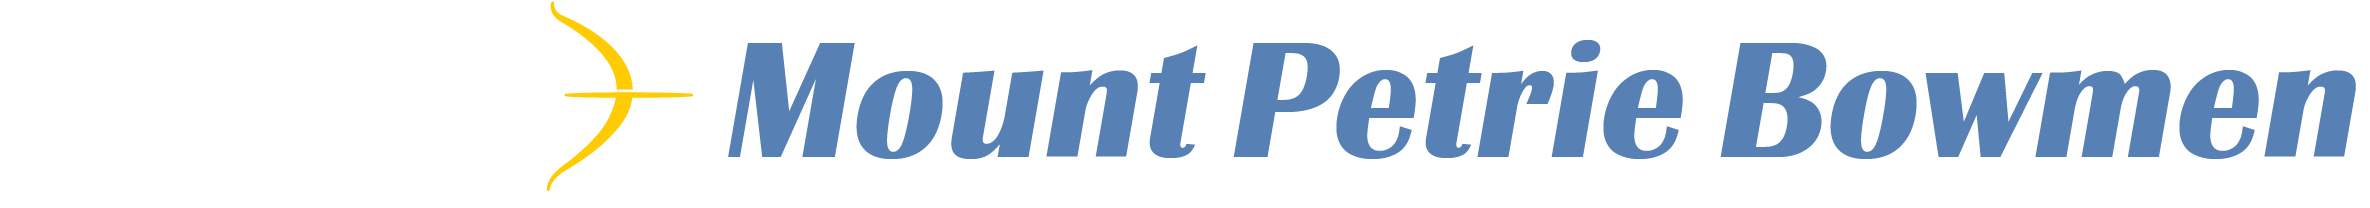 Mount Petrie Bowmen Logo